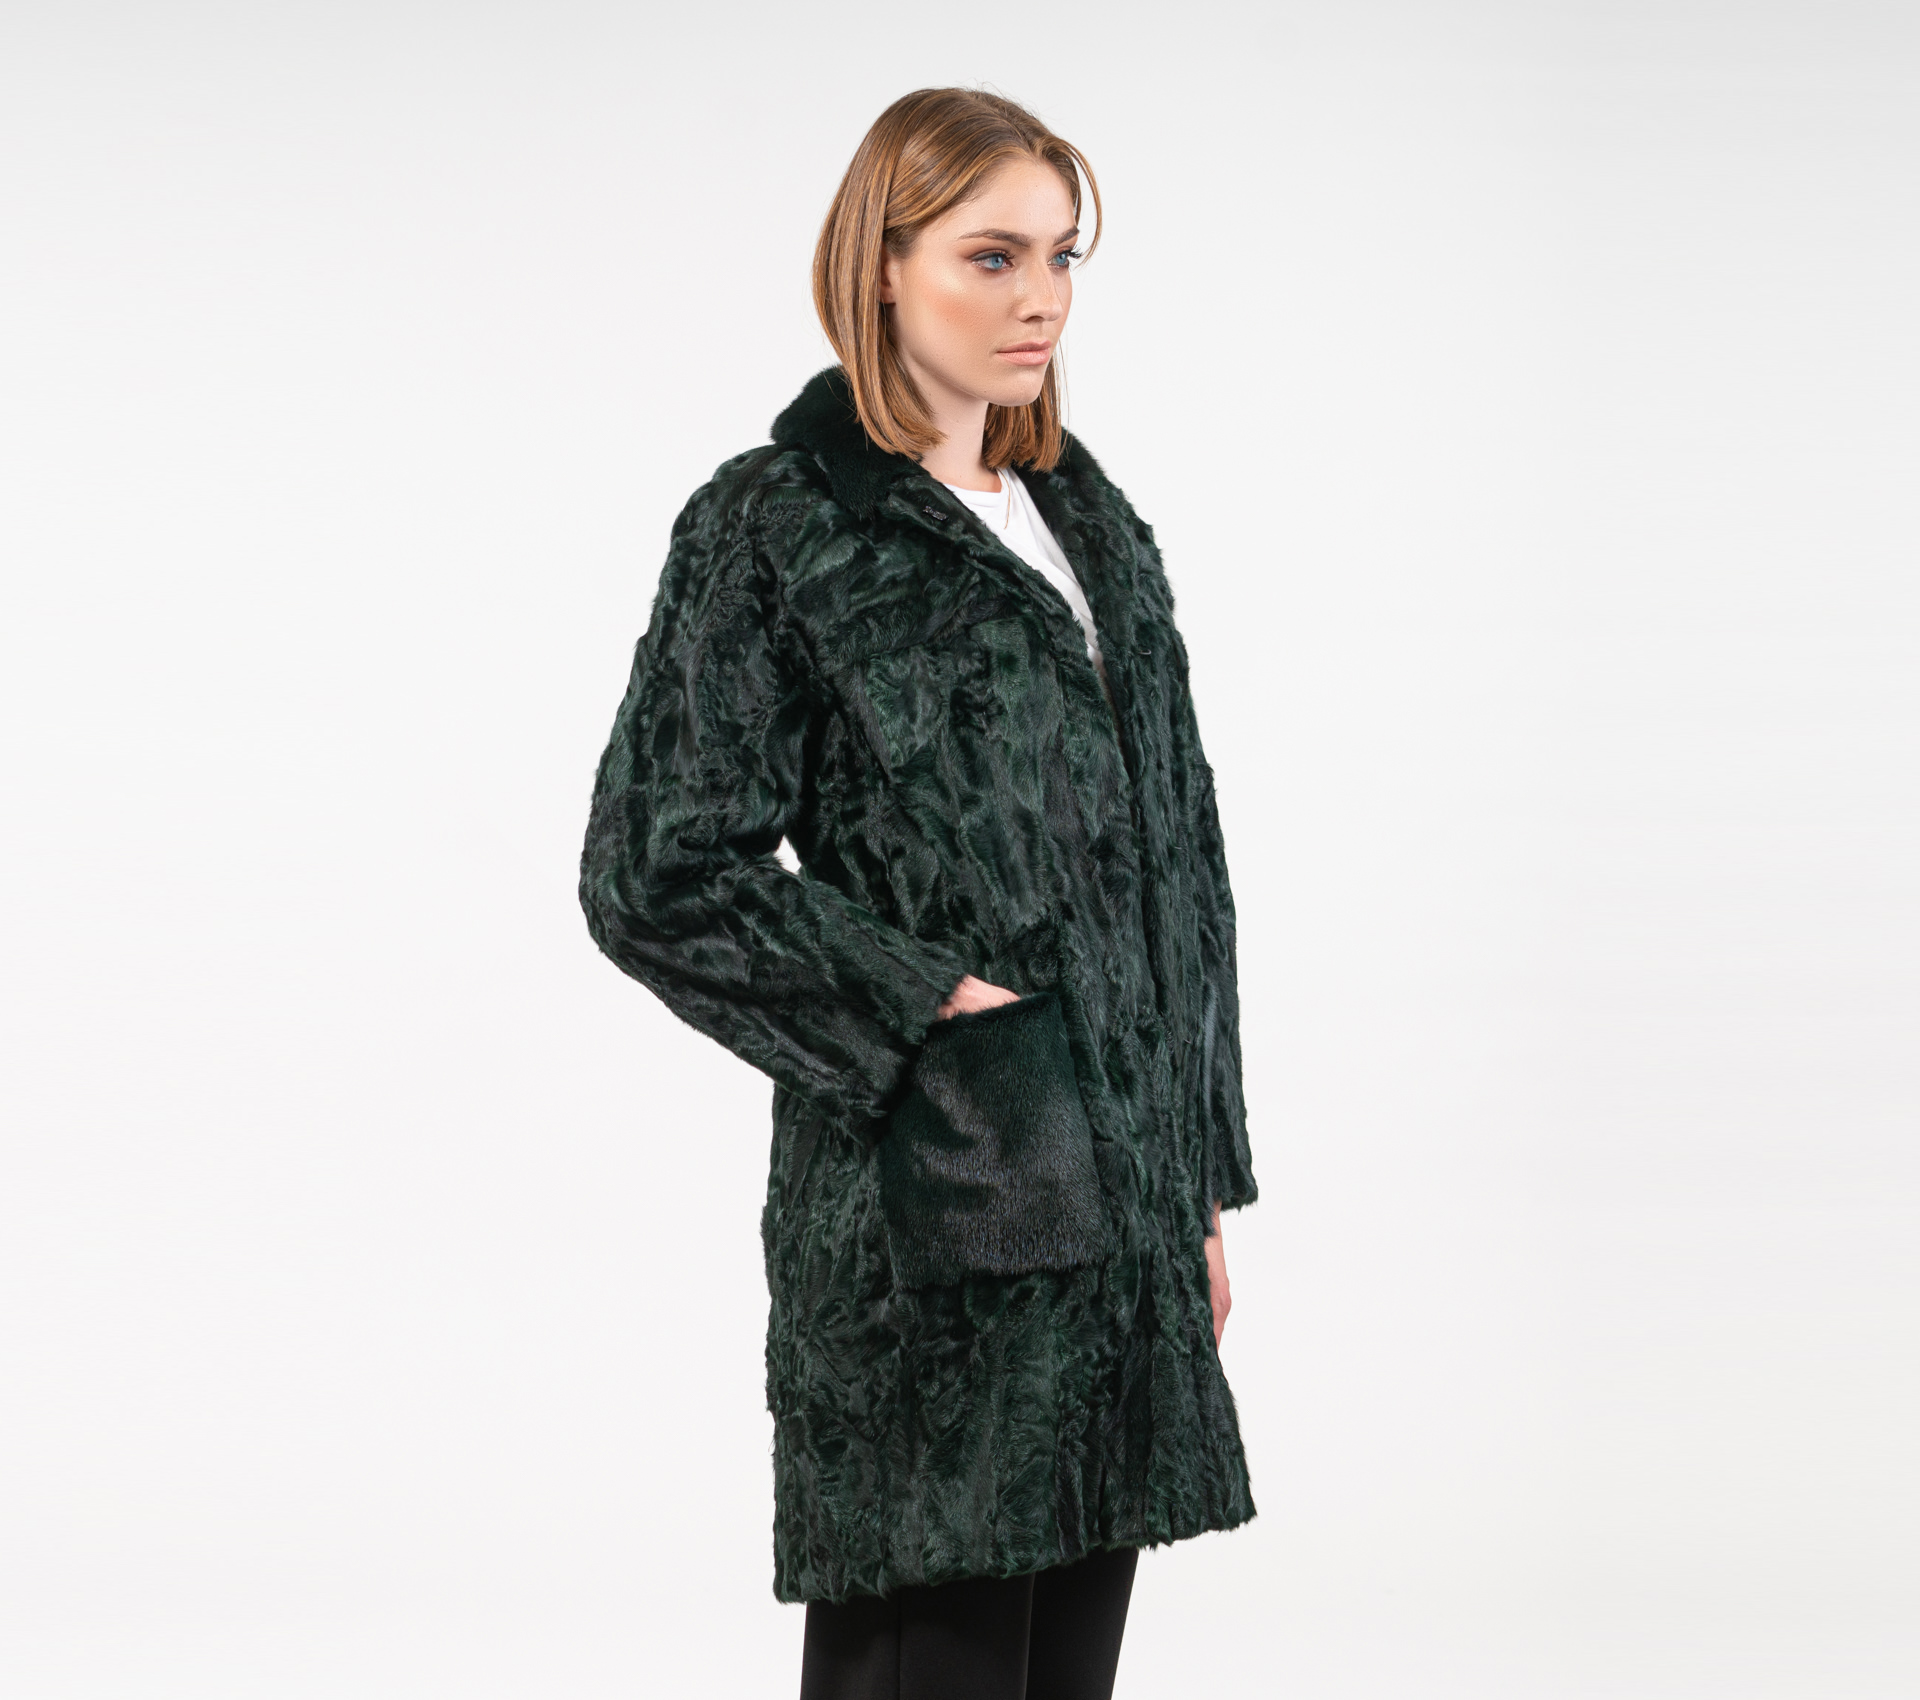 Cypress Green Astrakhan Fur Jacket - 100% Real Fur Coats - Haute Acorn